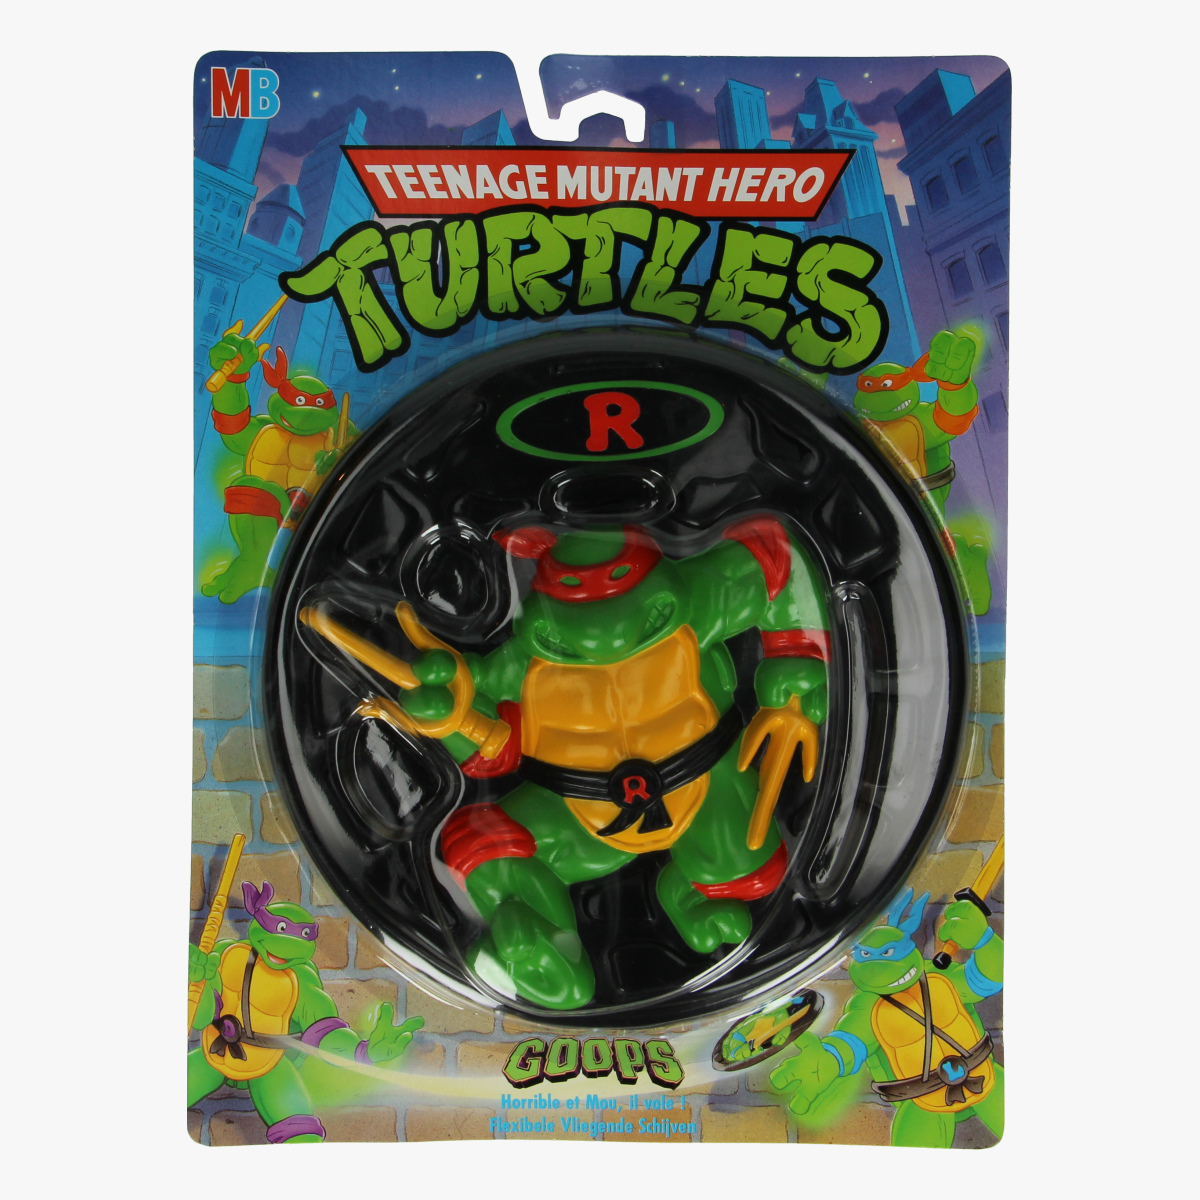 Afbeeldingen van Teenage mutant hero Turtles frisbee Raphael